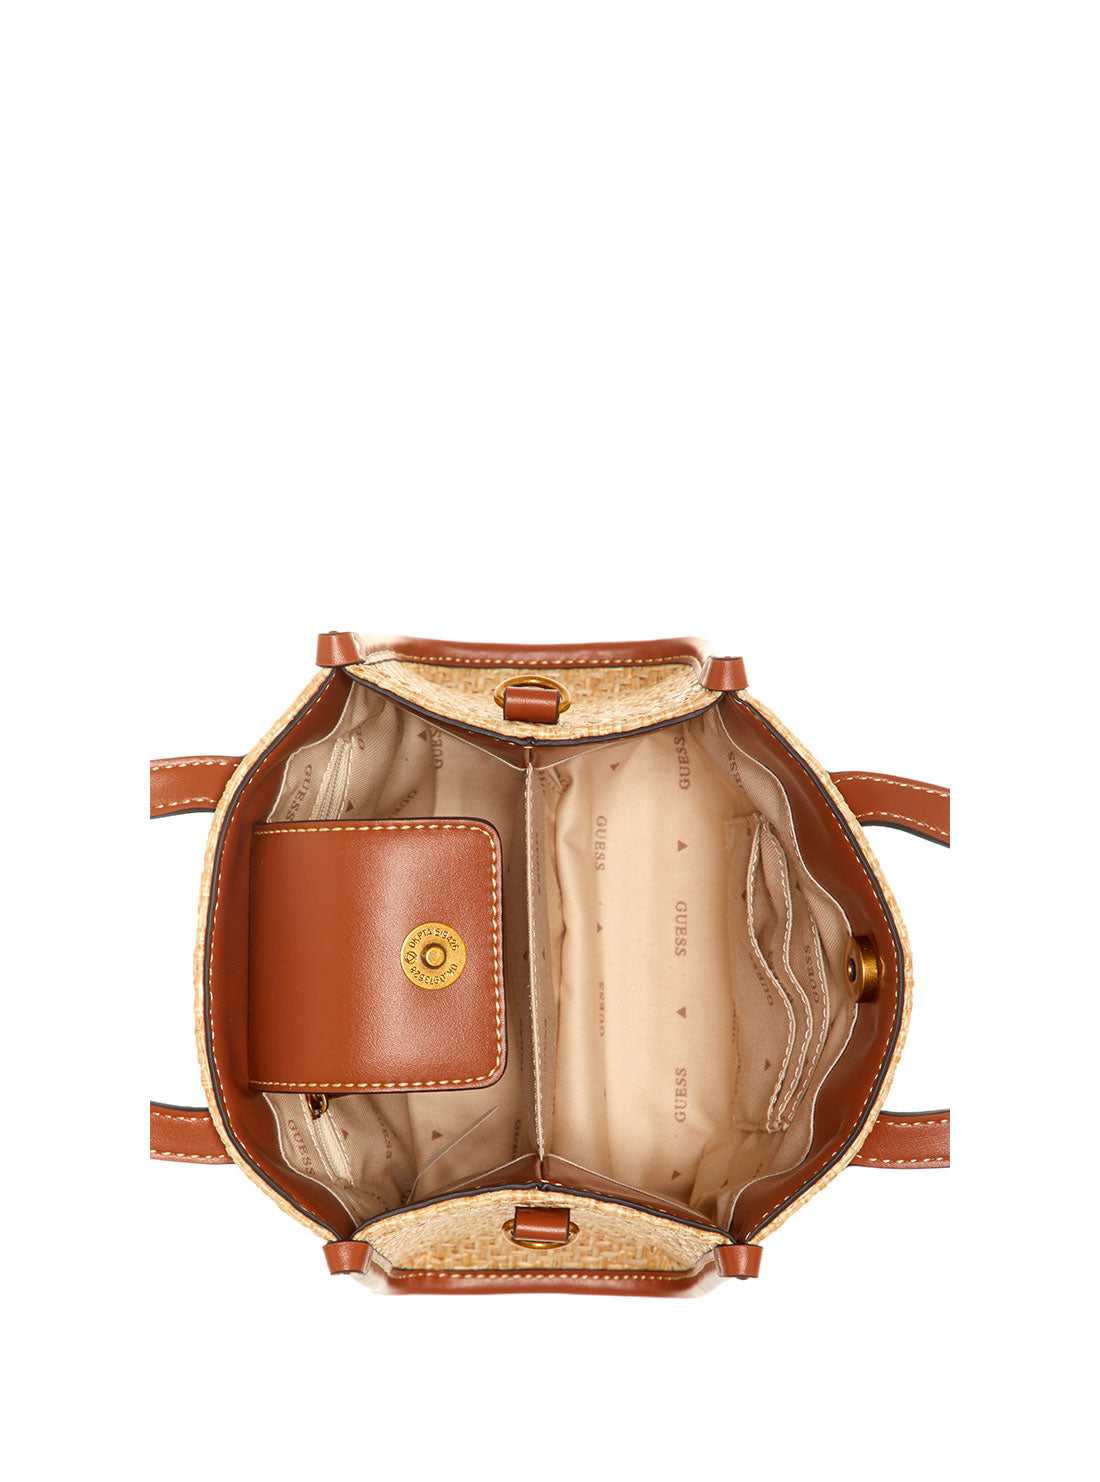 GUESS Women's Cognac Silvana Mini Tote Bag WS866577 Inside View